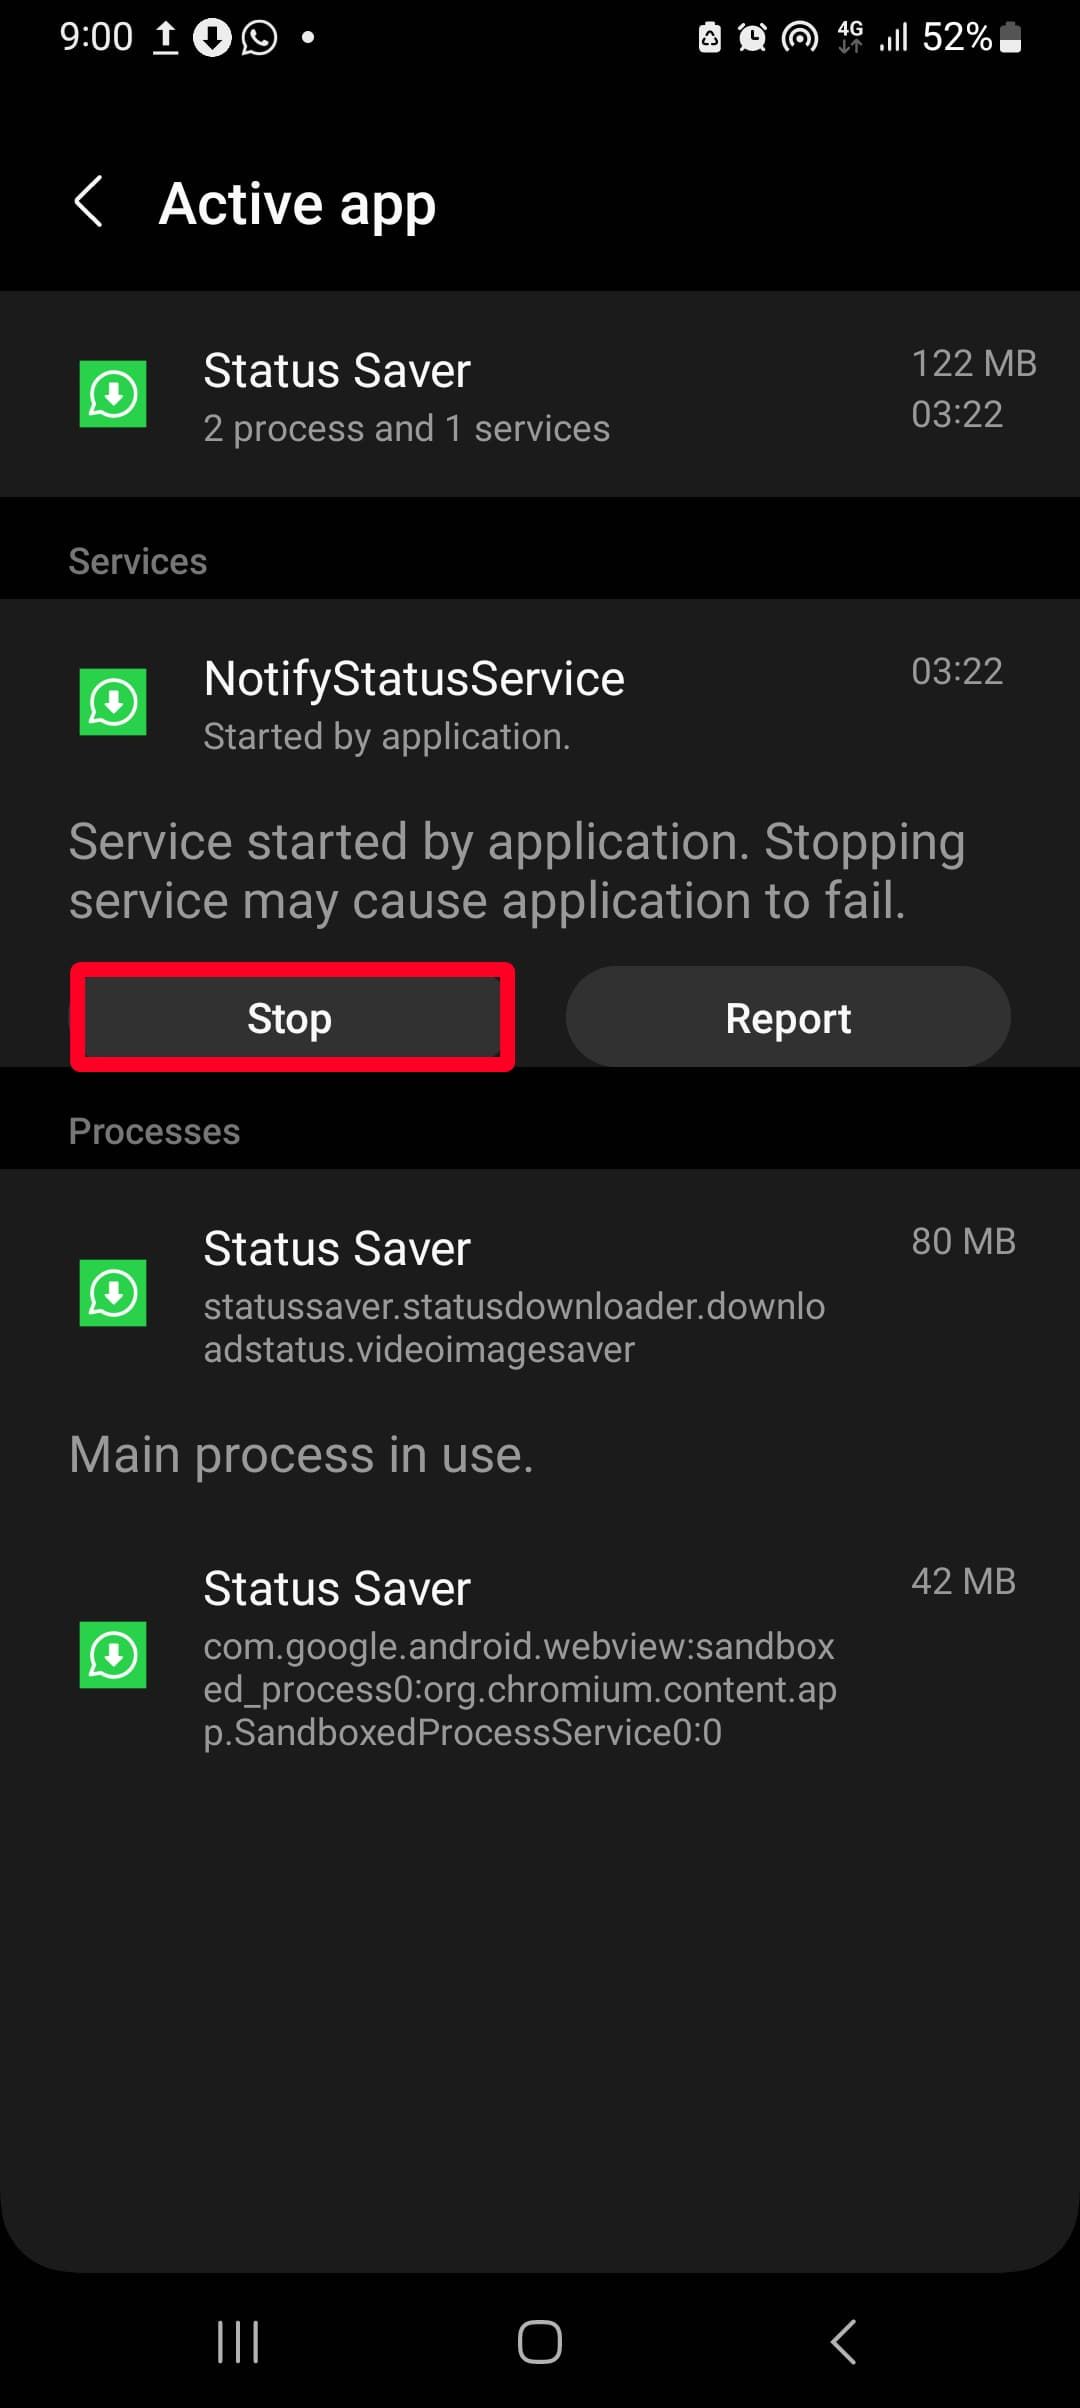 contorno de retângulo vermelho sobre a opção de parada no menu do aplicativo ativo no modo de desenvolvedor no smartphone Android